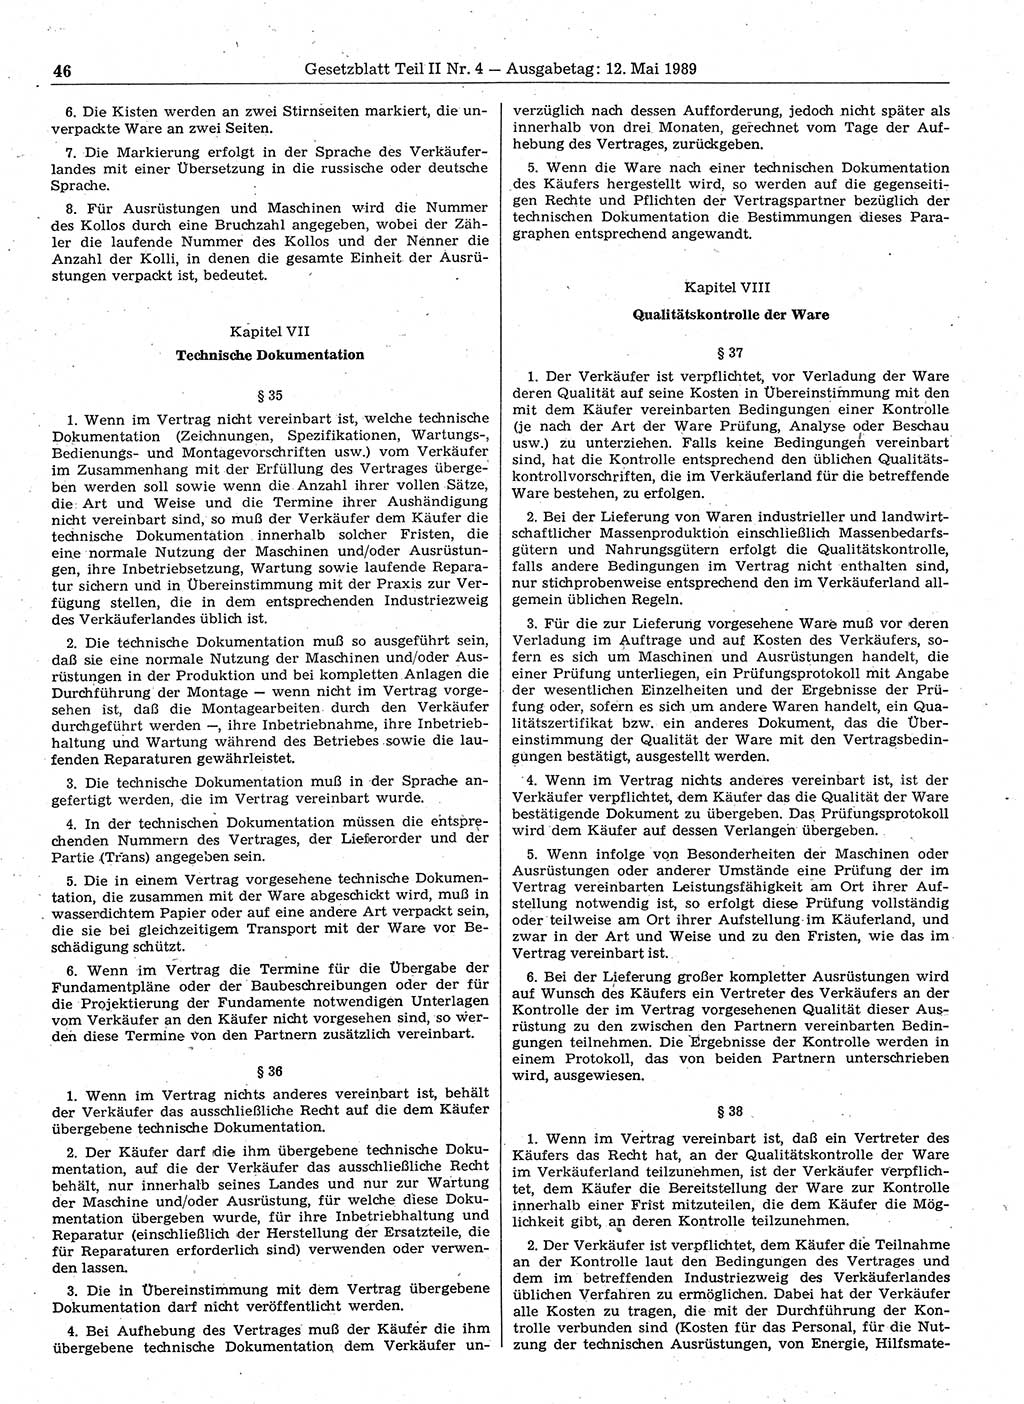 Gesetzblatt (GBl.) der Deutschen Demokratischen Republik (DDR) Teil ⅠⅠ 1989, Seite 46 (GBl. DDR ⅠⅠ 1989, S. 46)